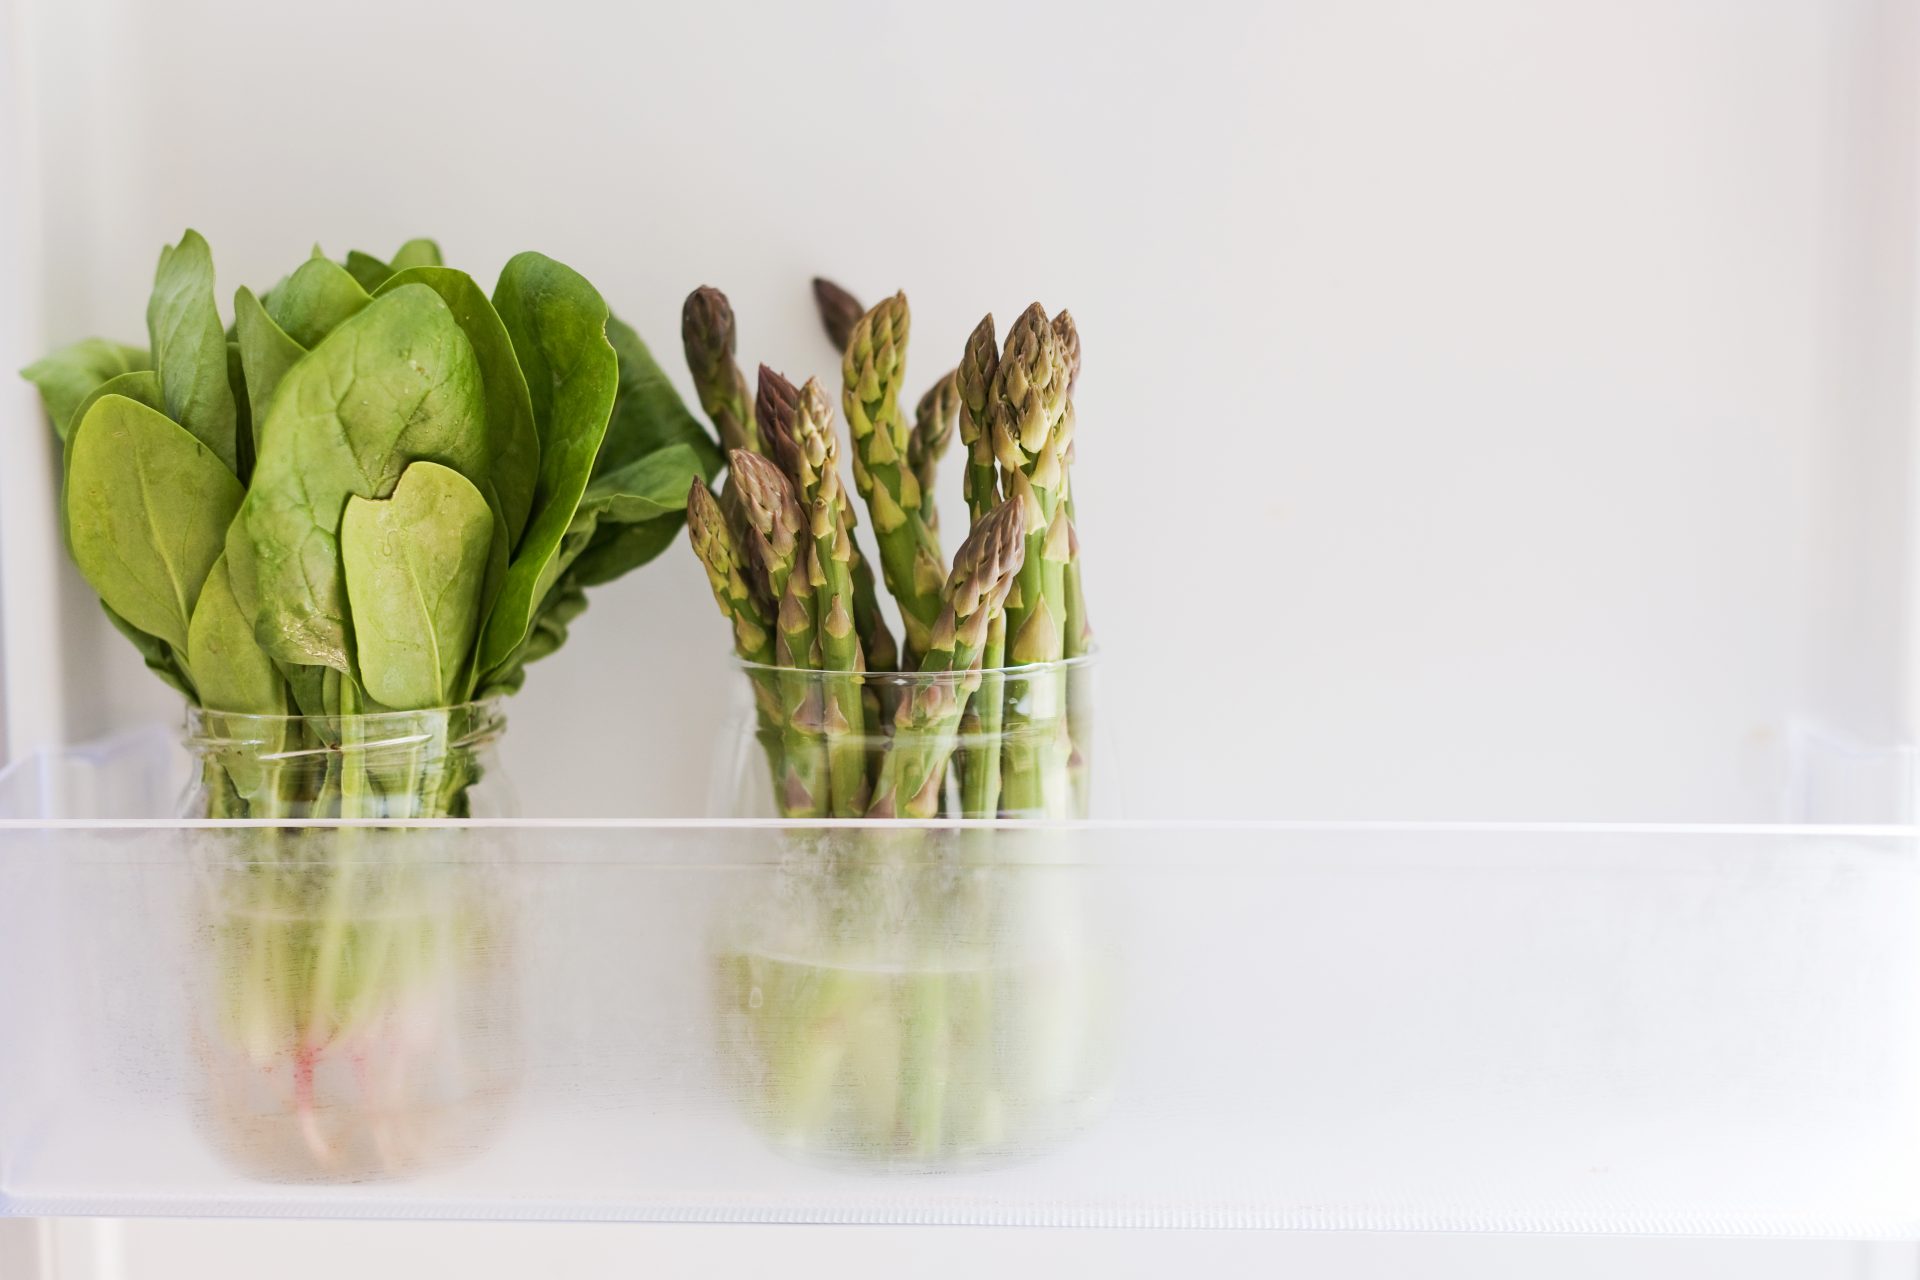 Tricks for storing veggies to make them last longer!